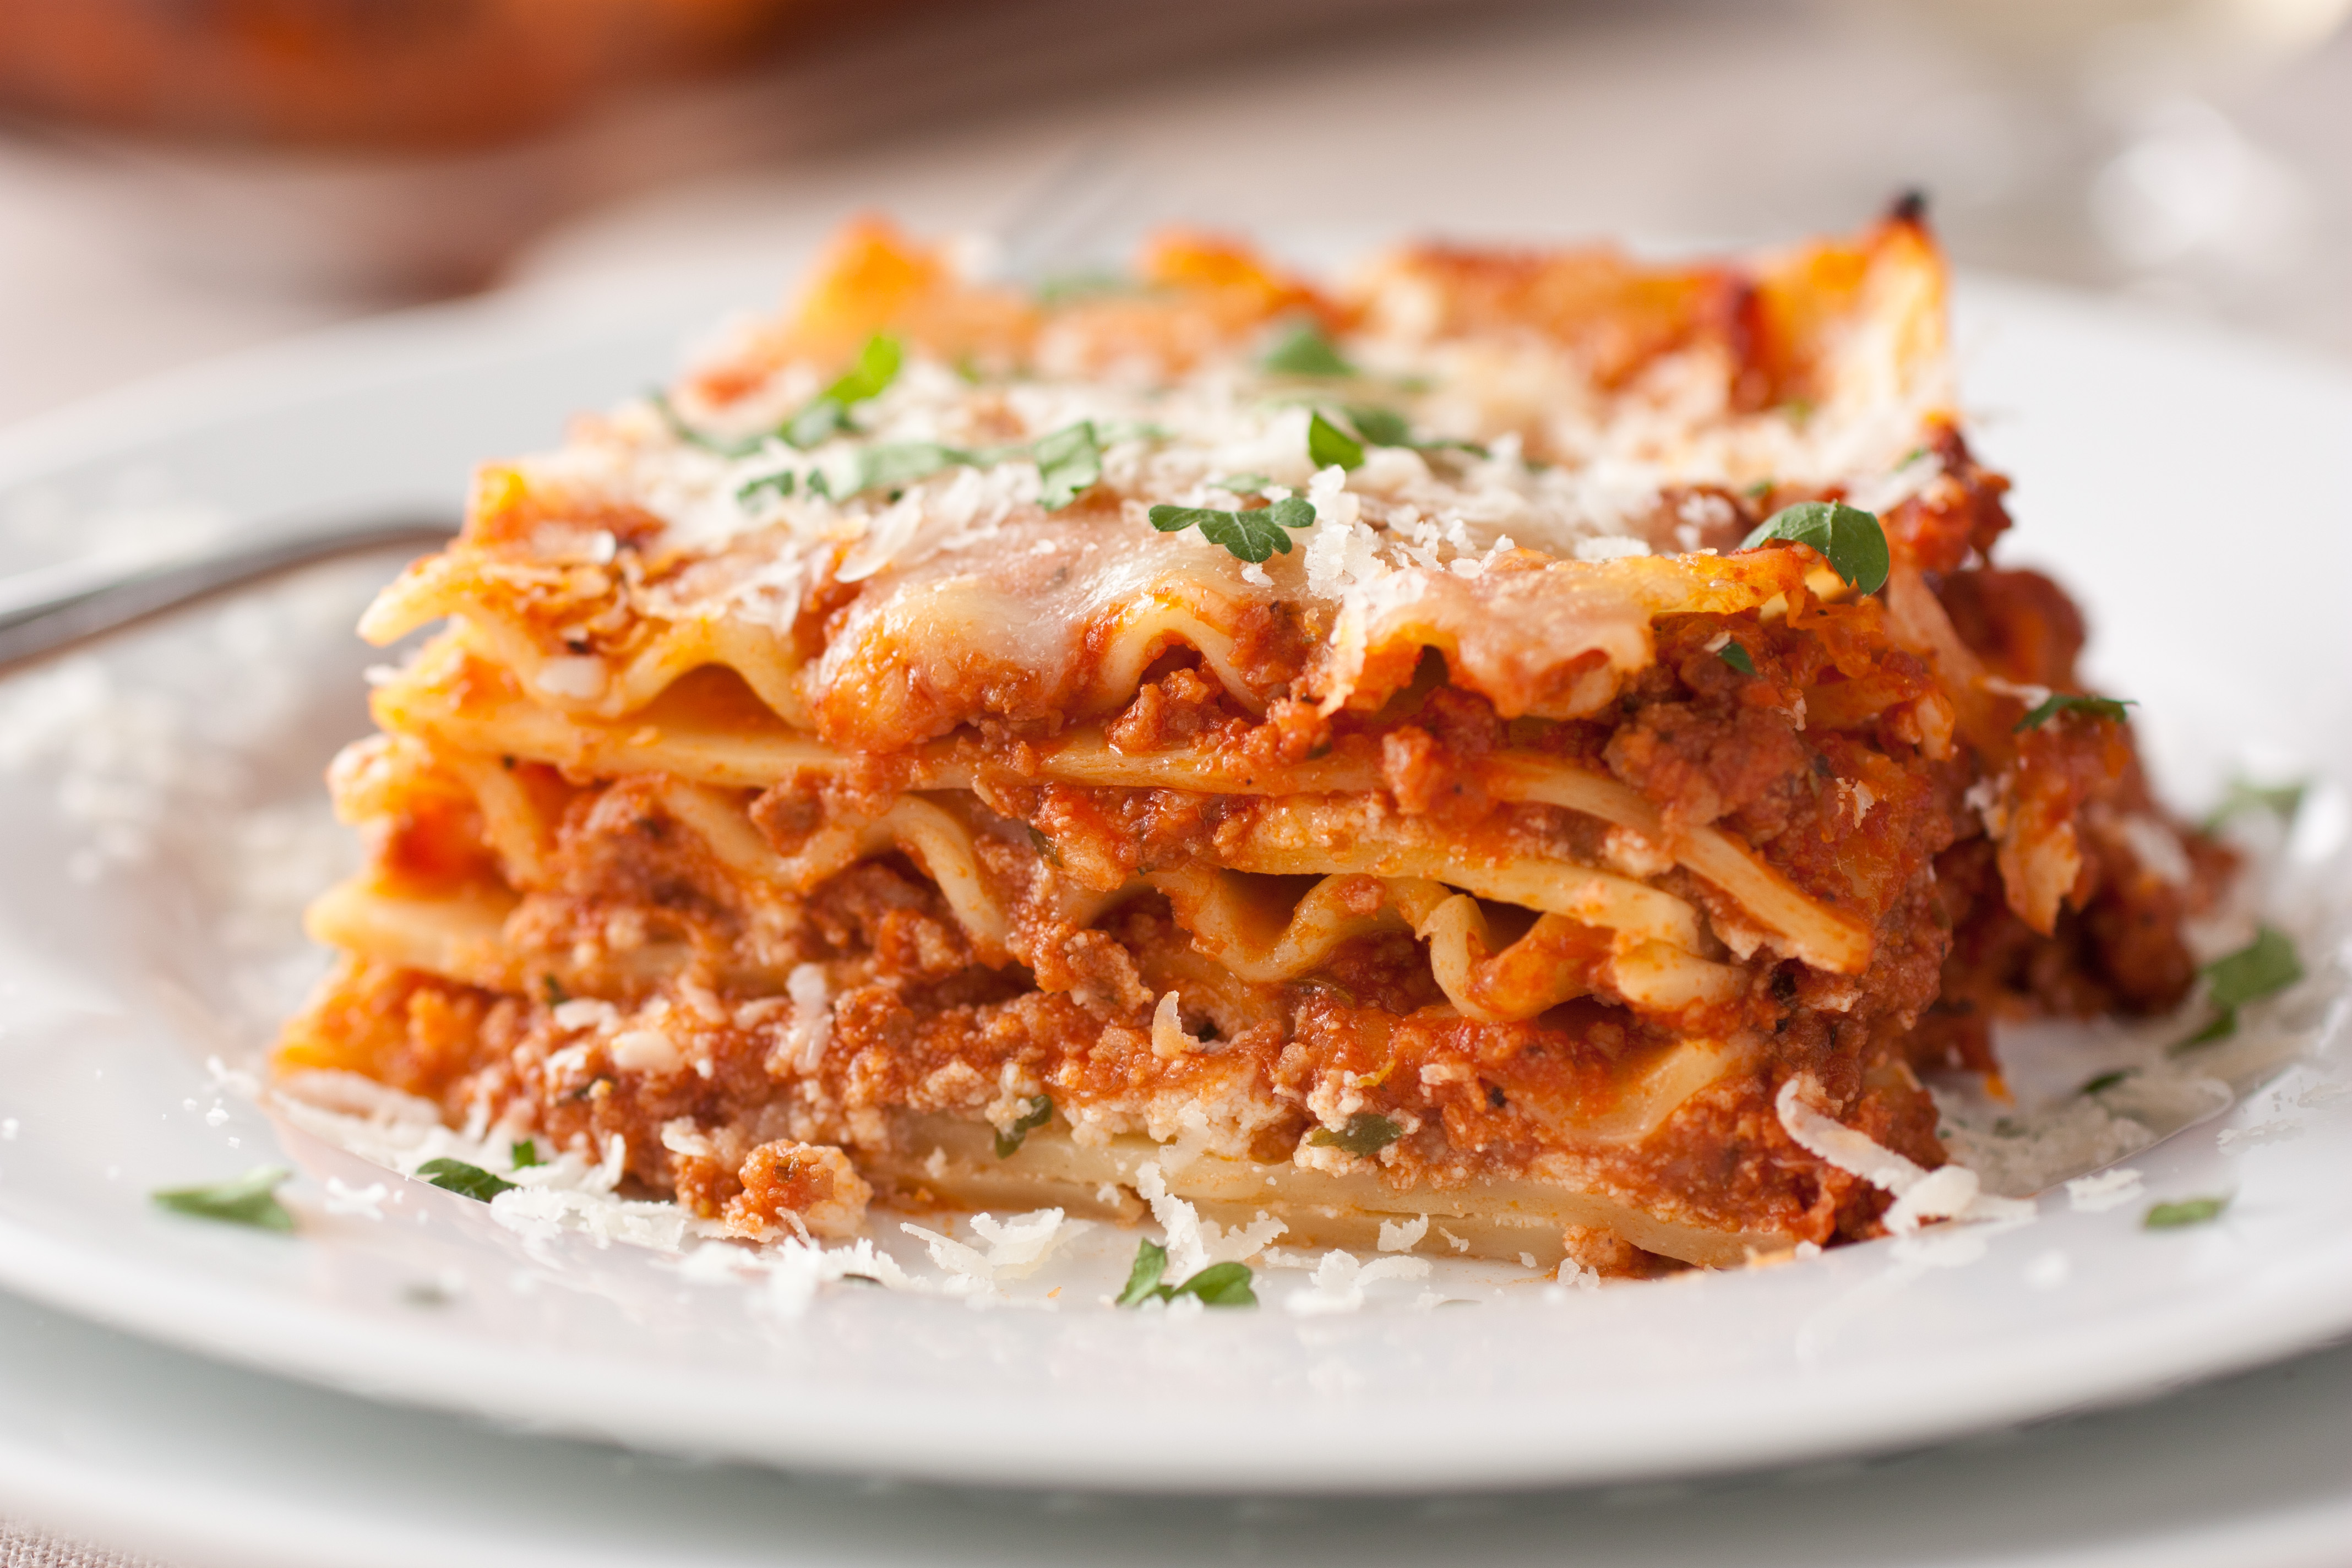 Lasagna Recipes: An Easy Way To Make The Baked Lasagna ...